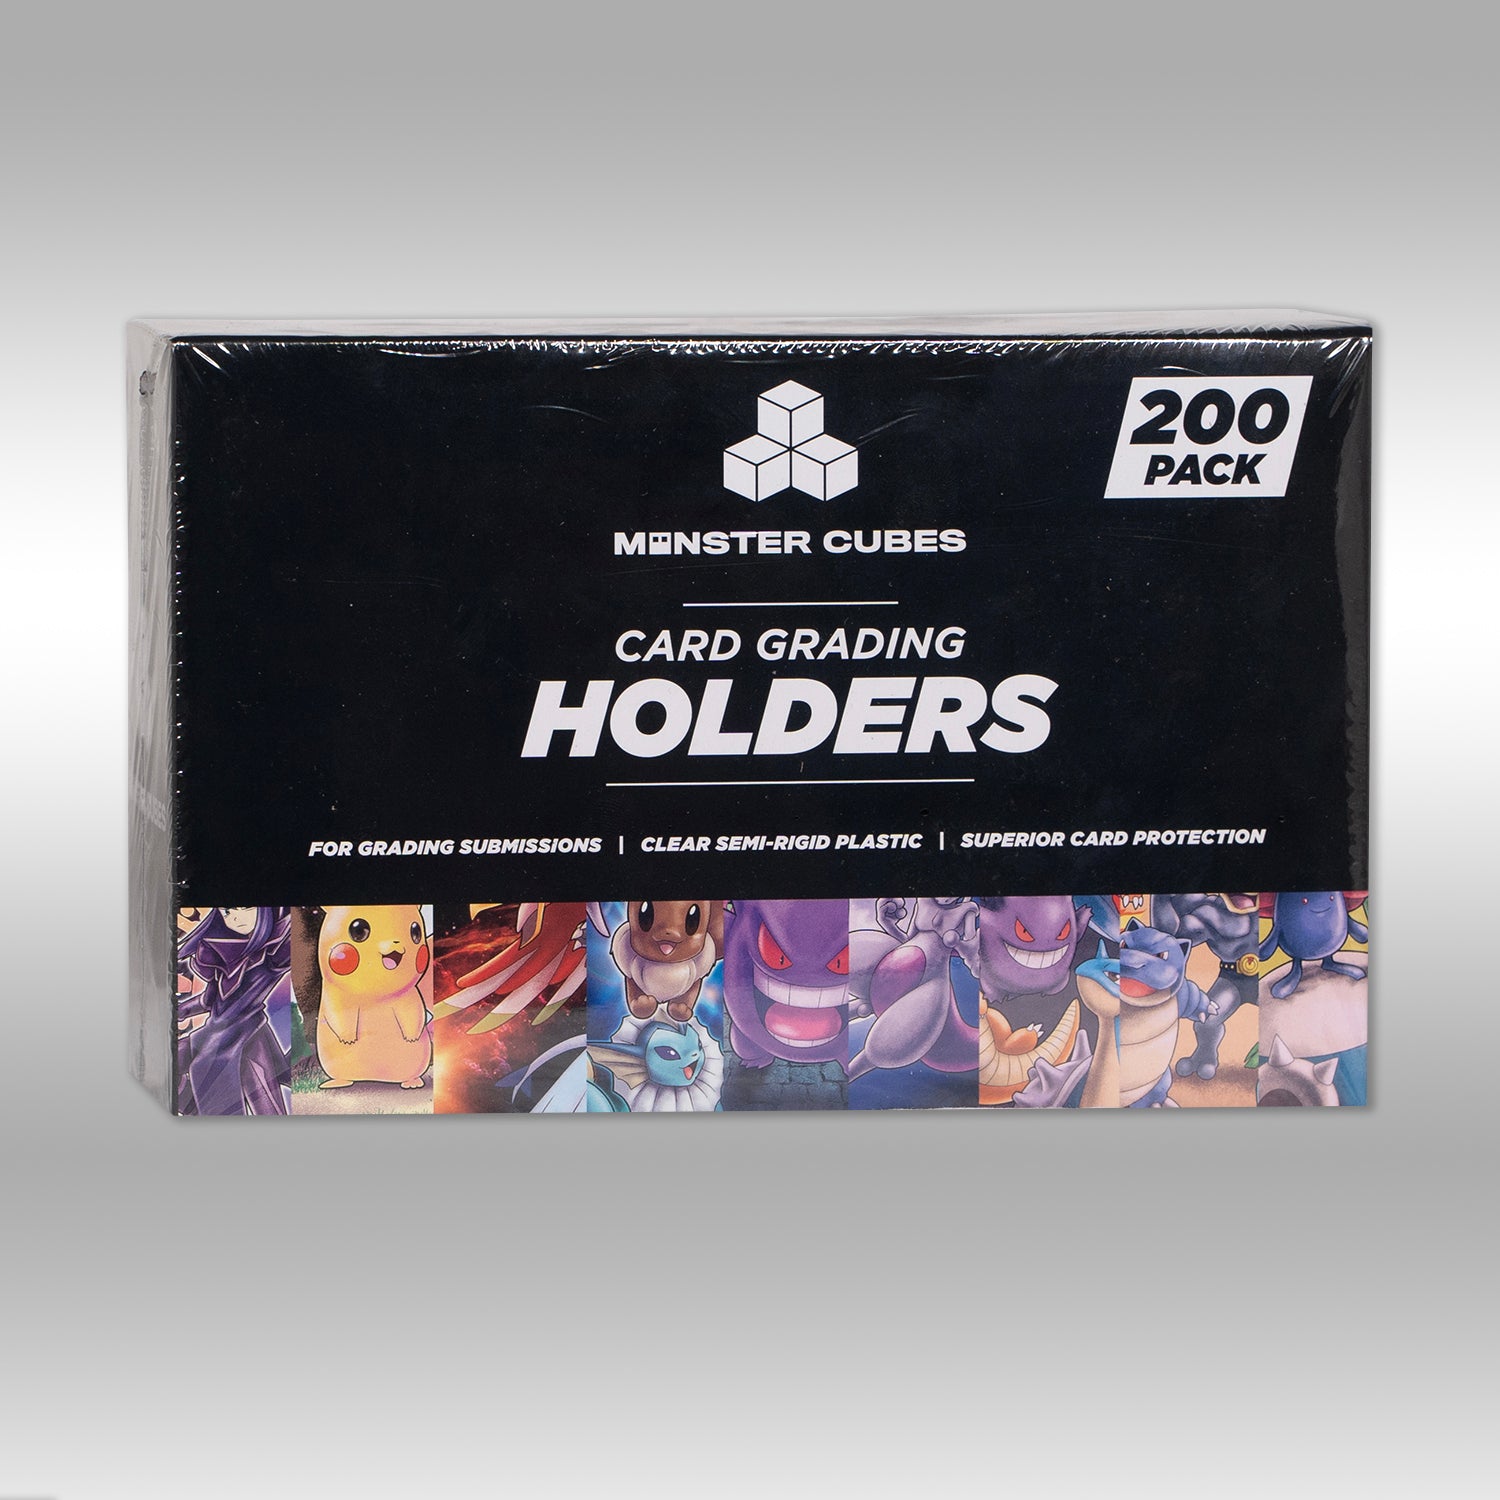 Card Grading Holders - 200 Pack